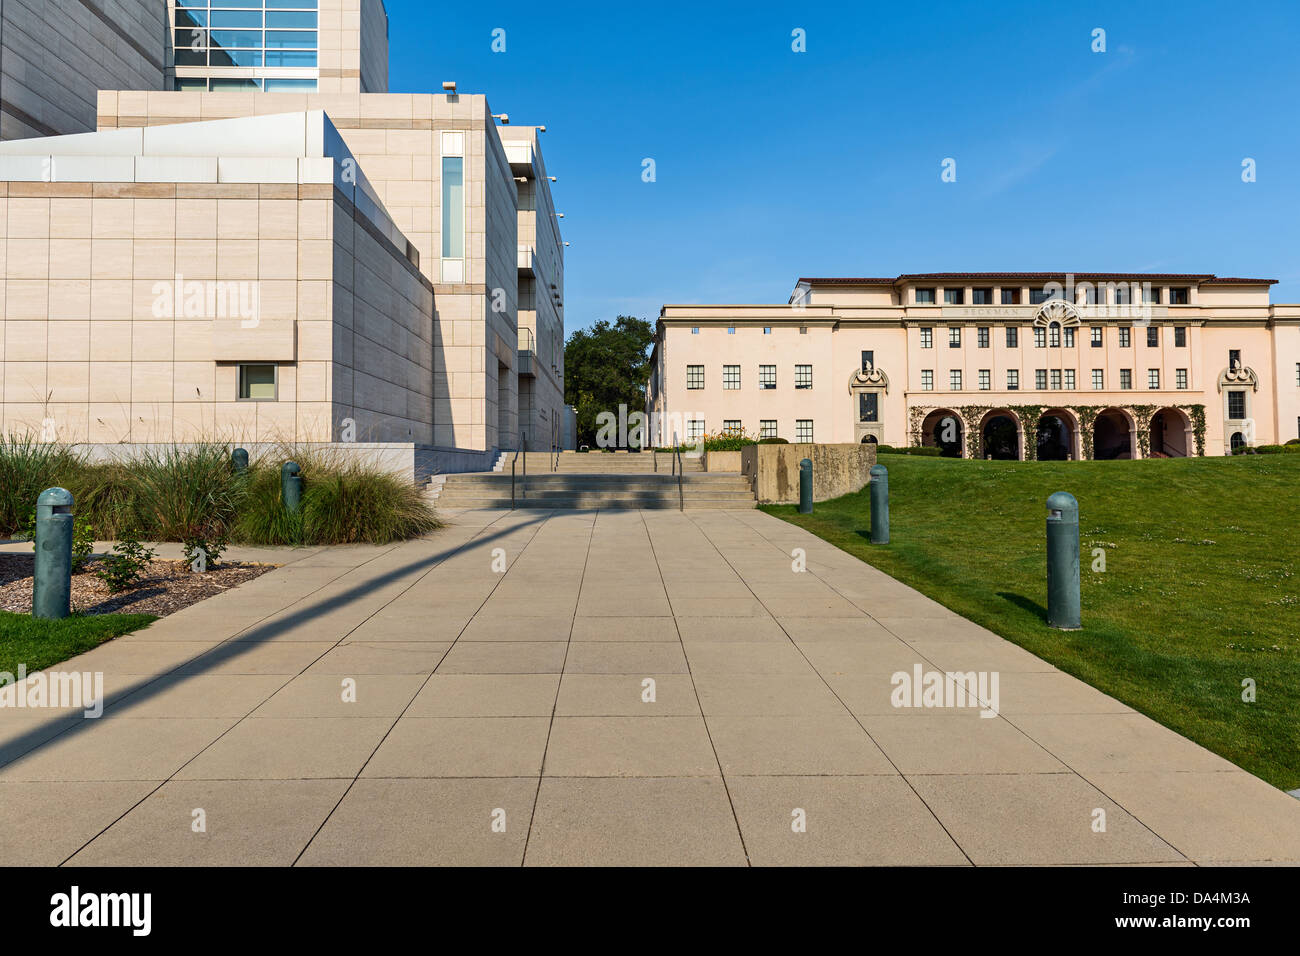 La Beckman Institute presso Caltech, il California Institute of Technology. Foto Stock